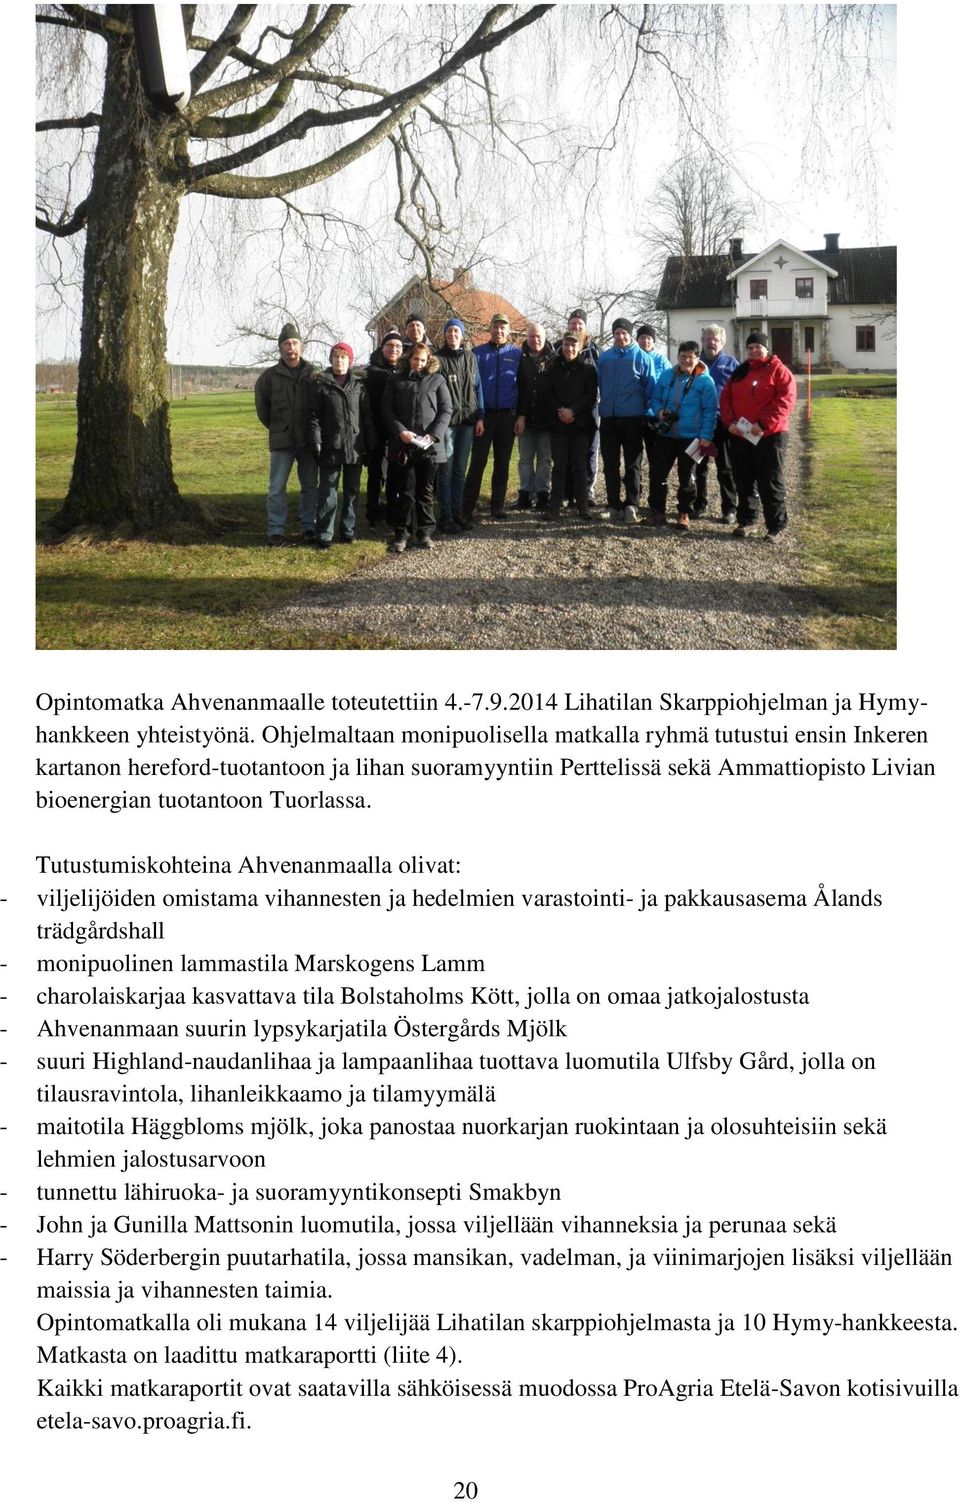 Tutustumiskohteina Ahvenanmaalla olivat: - viljelijöiden omistama vihannesten ja hedelmien varastointi- ja pakkausasema Ålands trädgårdshall - monipuolinen lammastila Marskogens Lamm -